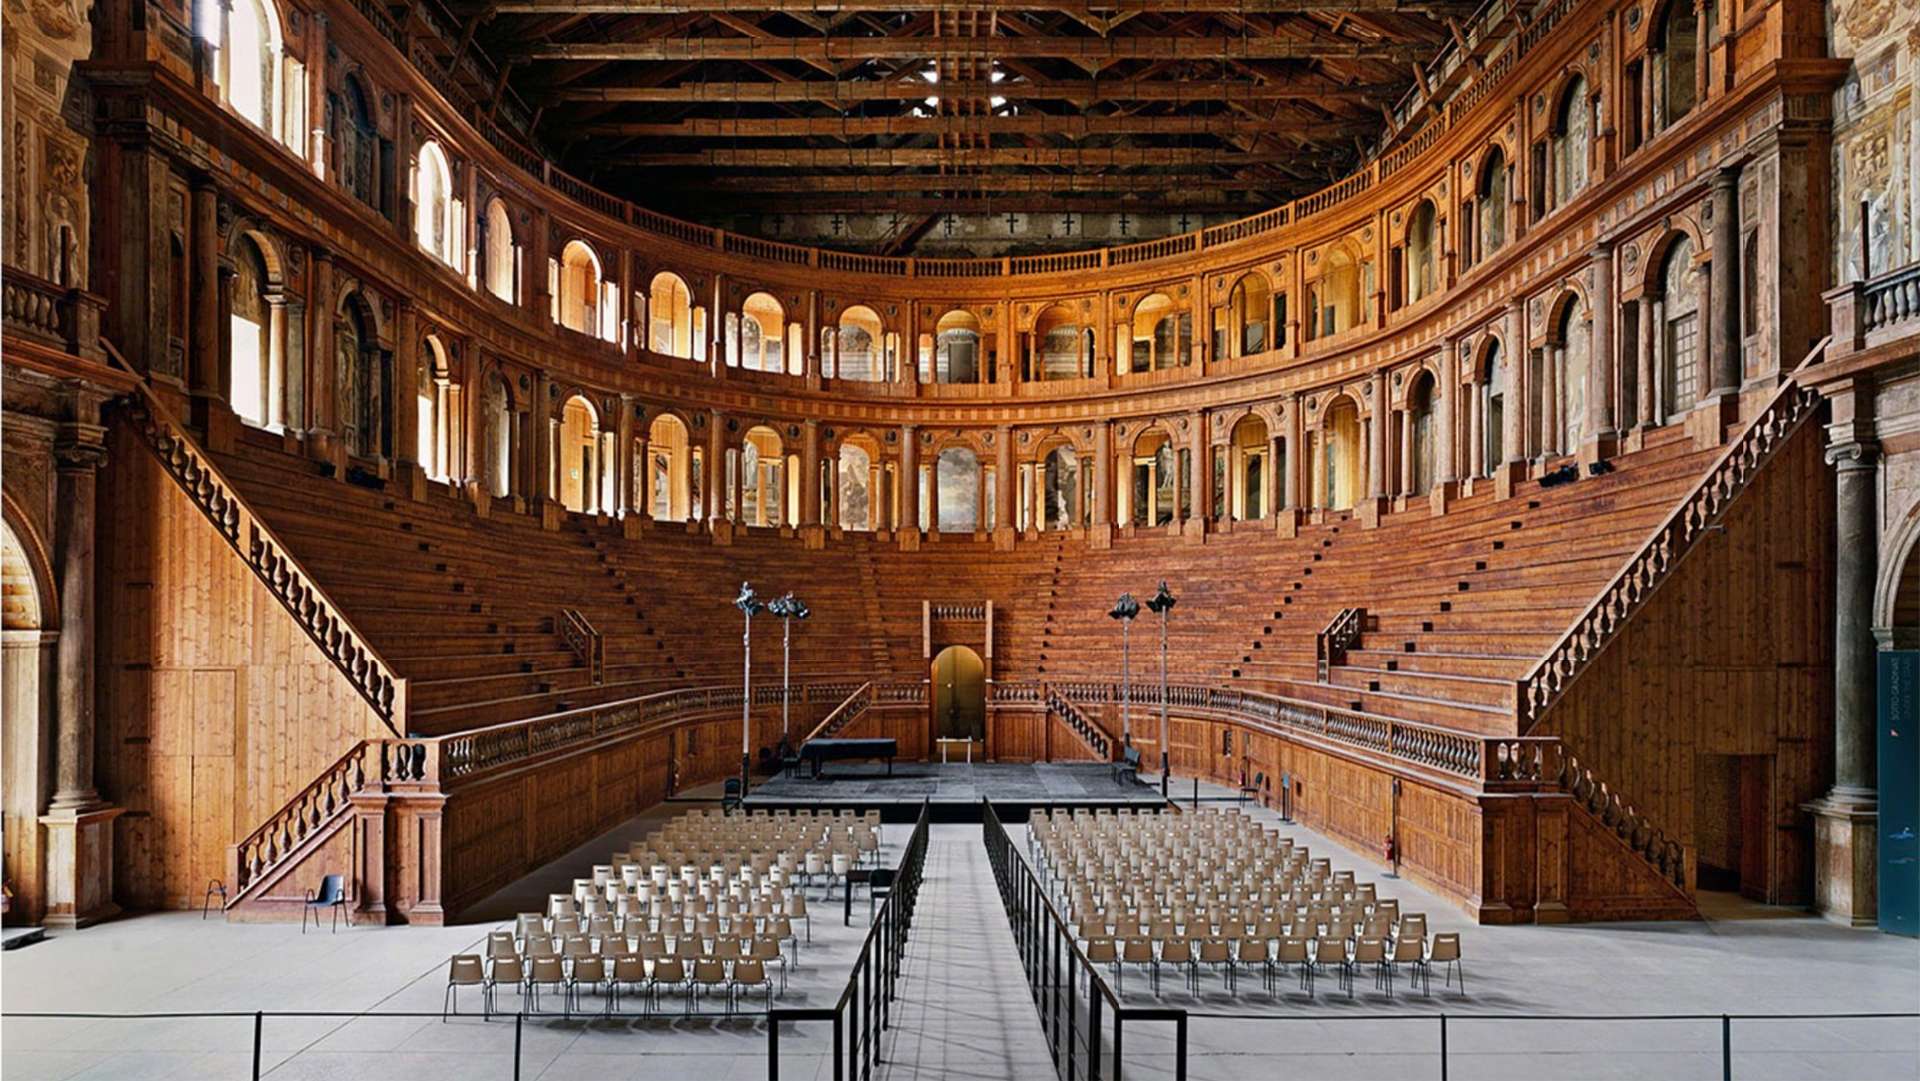 Teatro Farnese - Complesso Monumentale della Pilotta, Parma - Photo by Ahemet Ertug